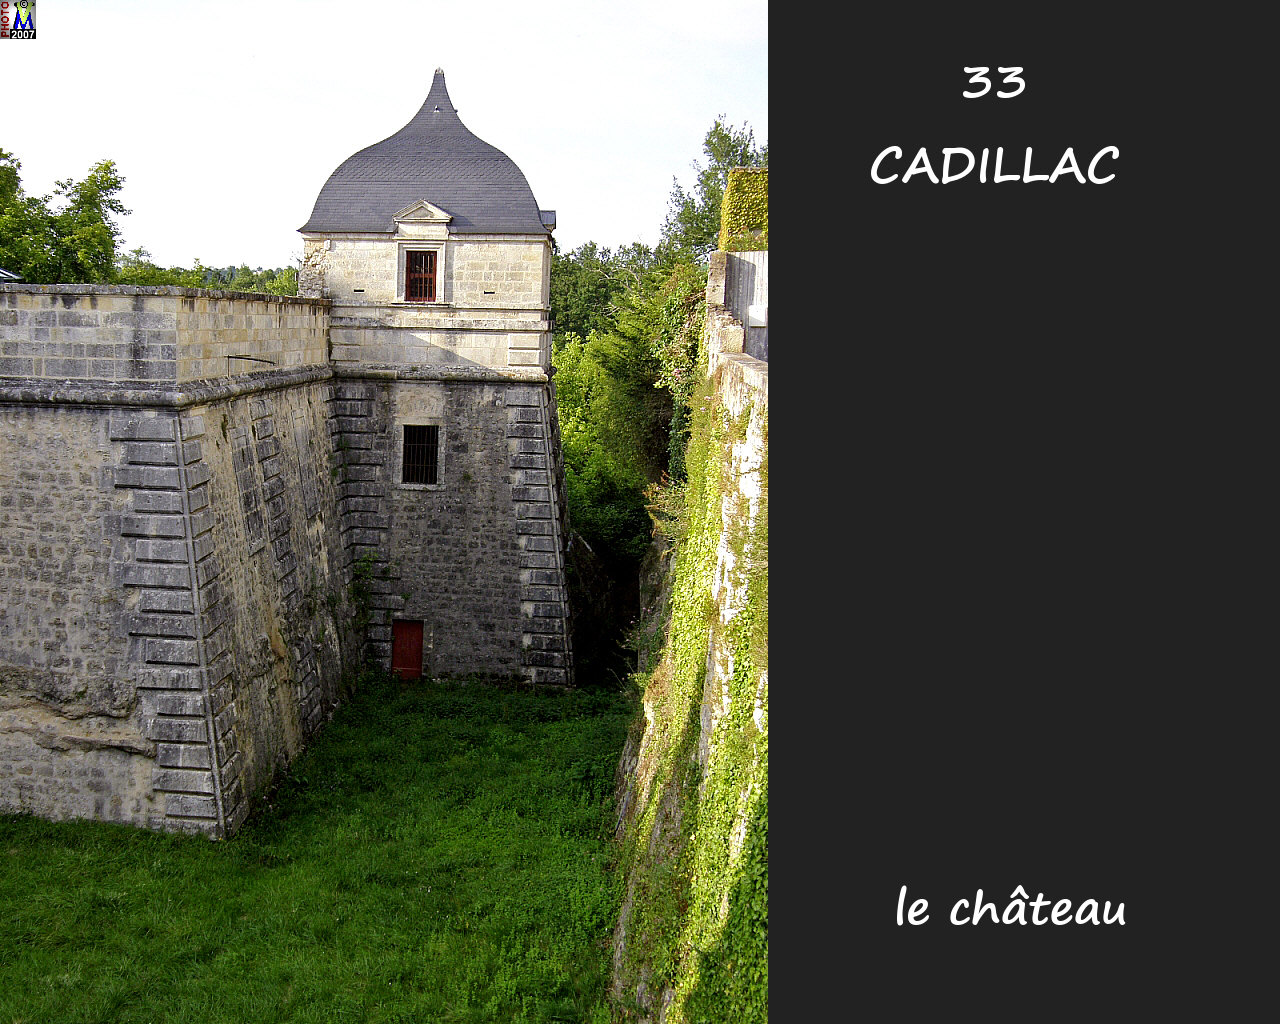 33CADILLAC_chateau_120.jpg